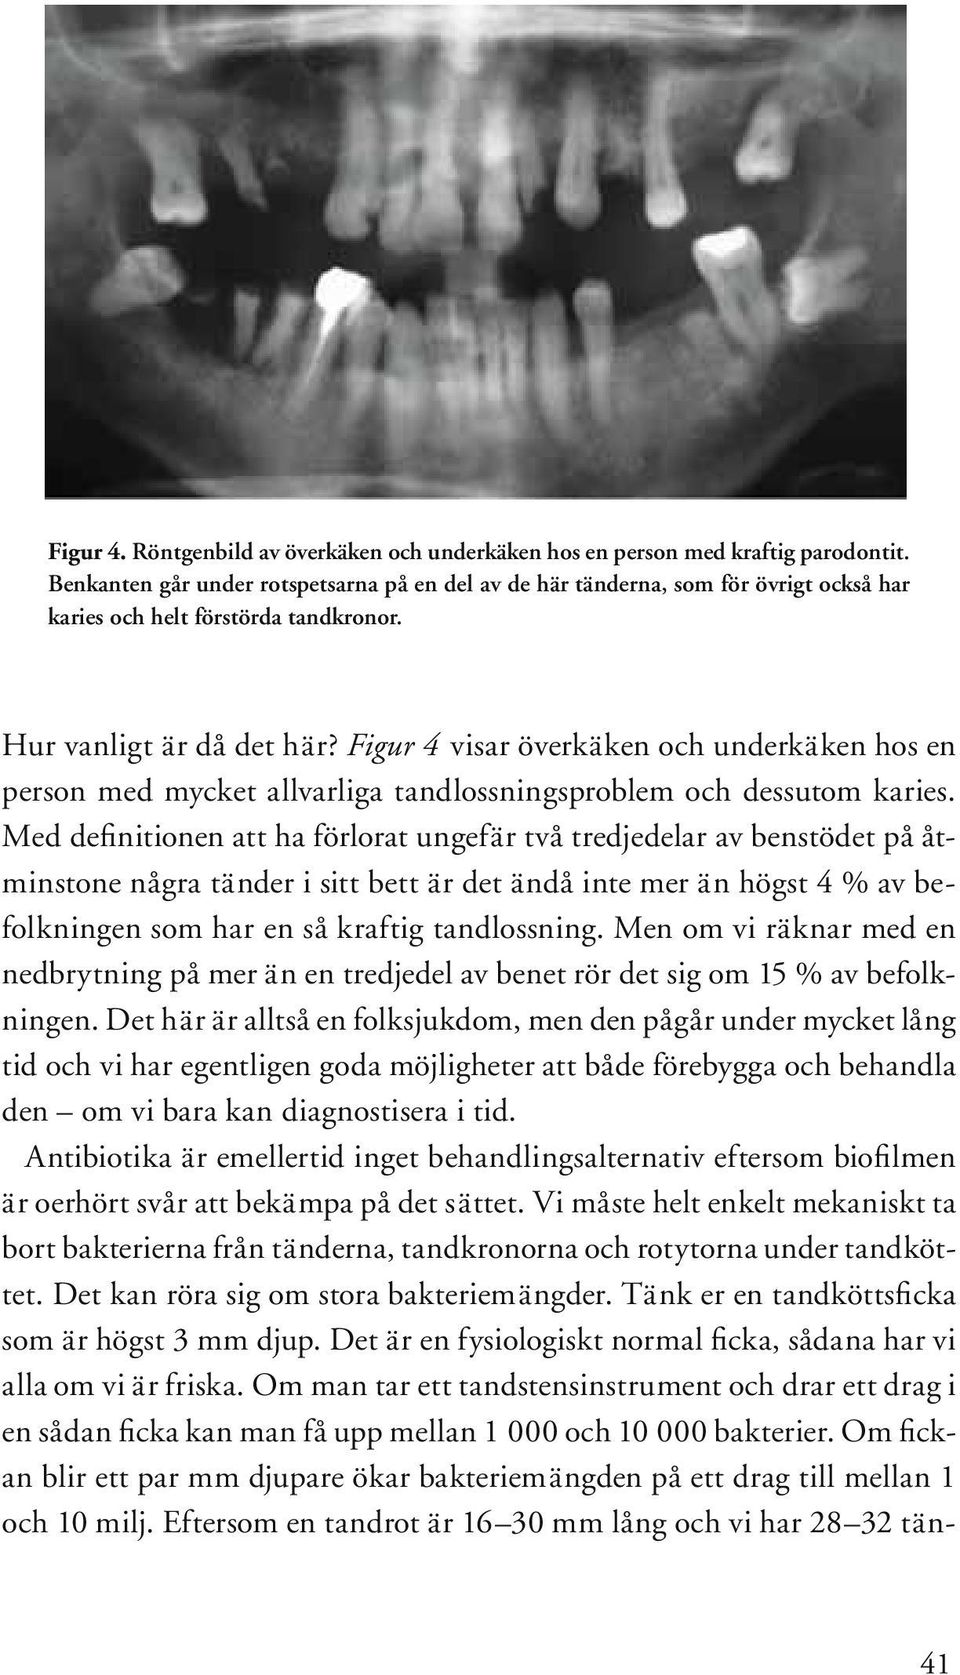 Figur 4 visar överkäken och underkäken hos en person med mycket allvarliga tandlossningsproblem och dessutom karies.